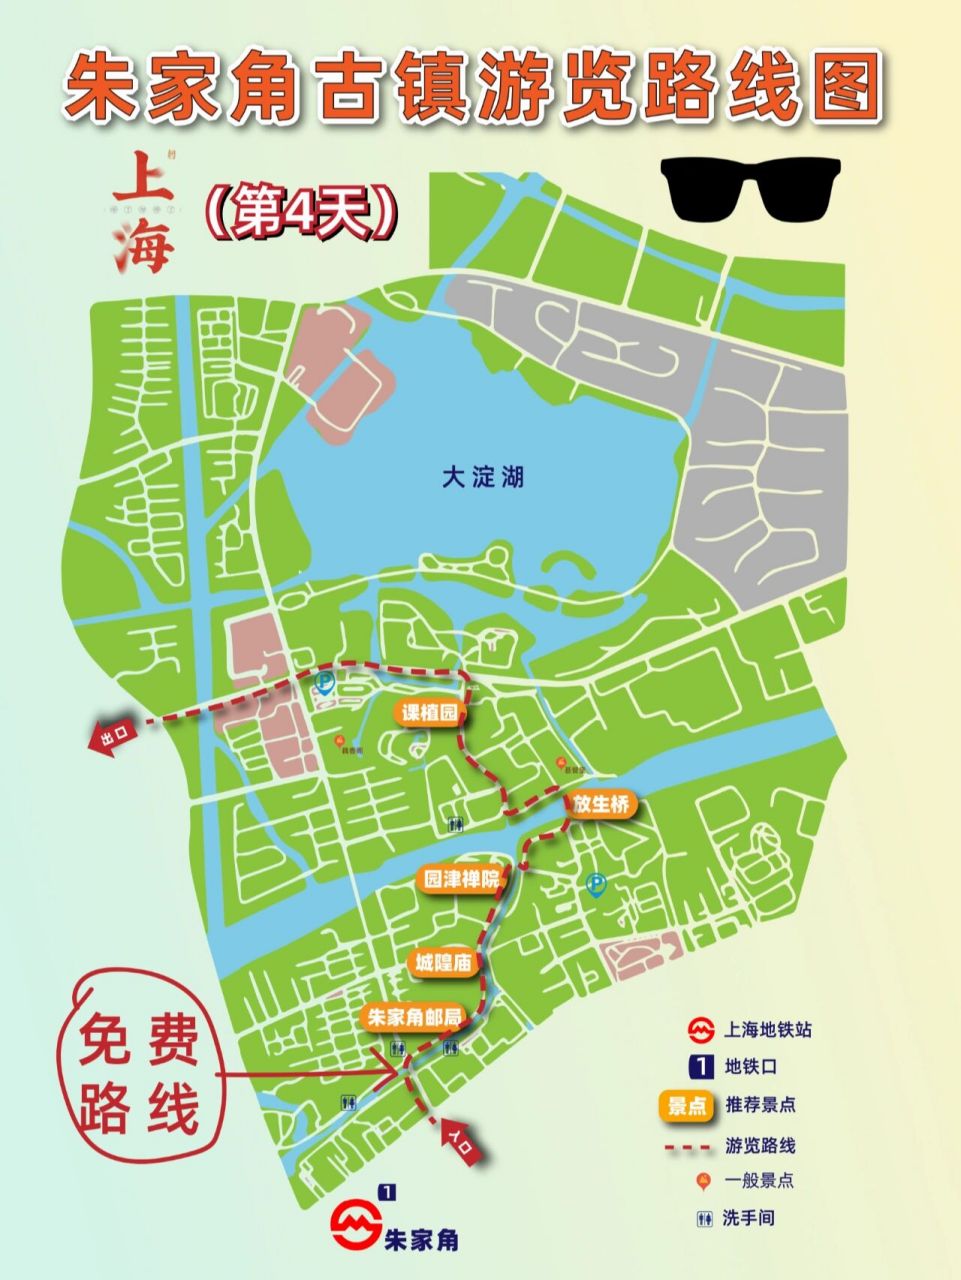 上海第4天–朱家角古镇旅游路线攻略     7715第4天: 去离上海